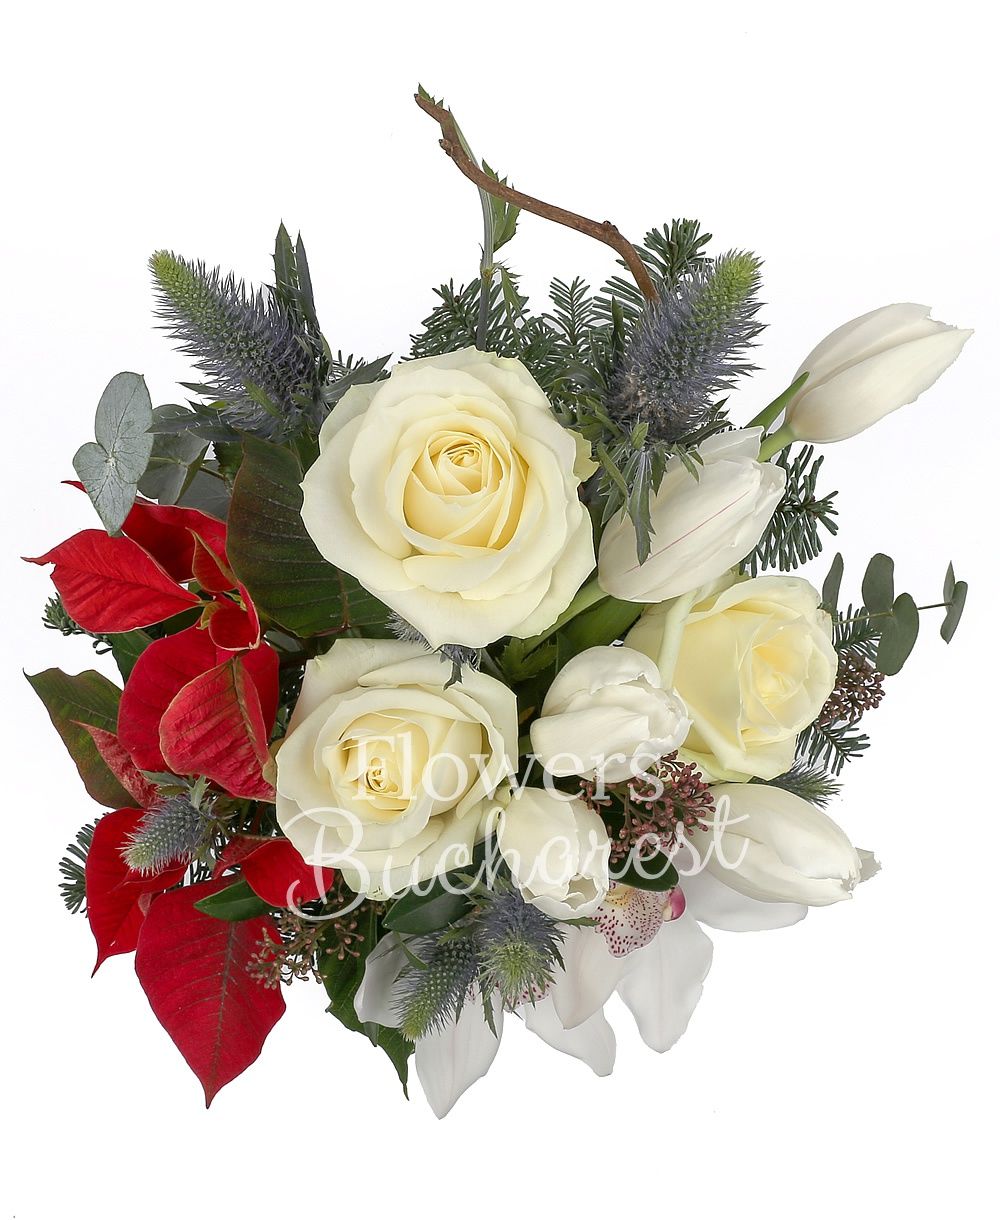 3 white roses, 5 white tulips, 1 white cymbidium, poinsettia, eryngium, corylus, fir, greenery, vase